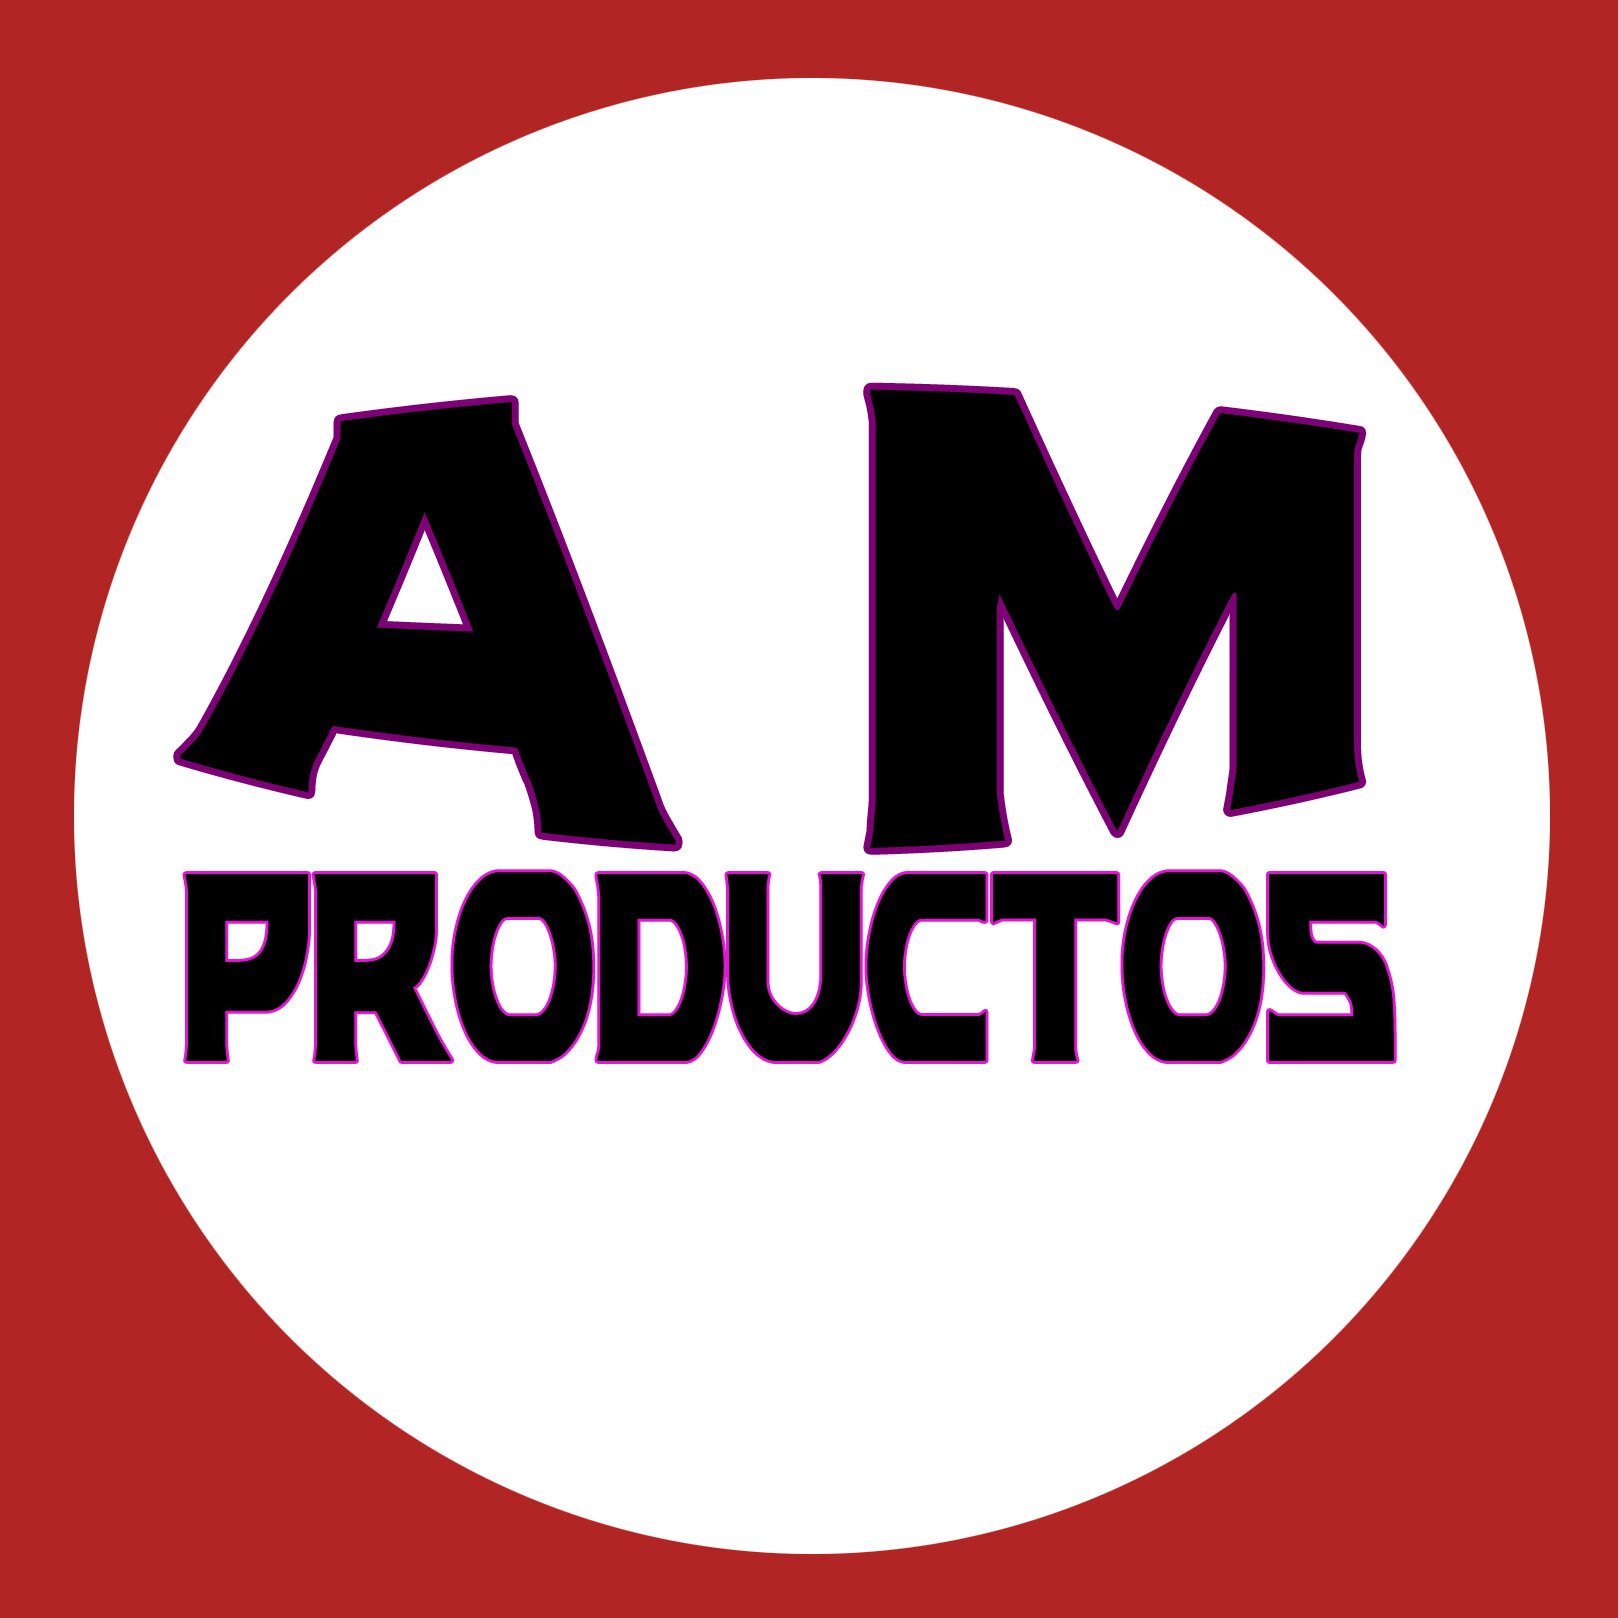 Fabrico llaveros, chapas, pins e imanes con el logo detu club de fans desde 1 unidad http://t.co/jhFyPUDCQn am.productos@outlook.es